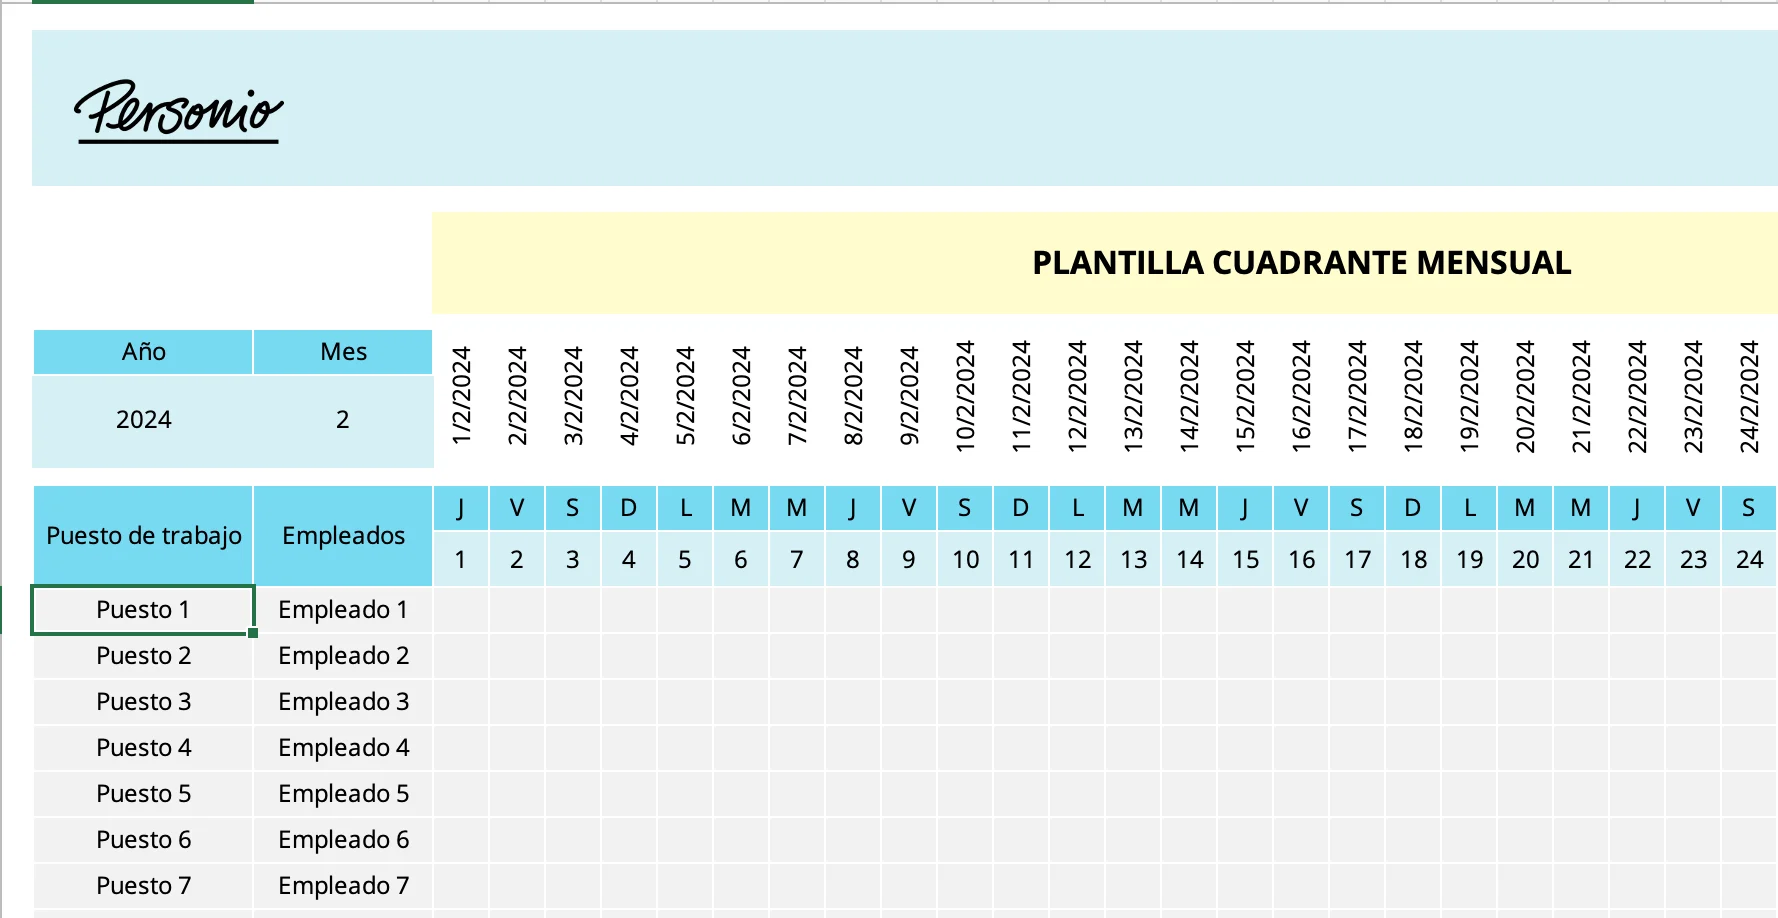 Plantilla cuadrante mensual (1)